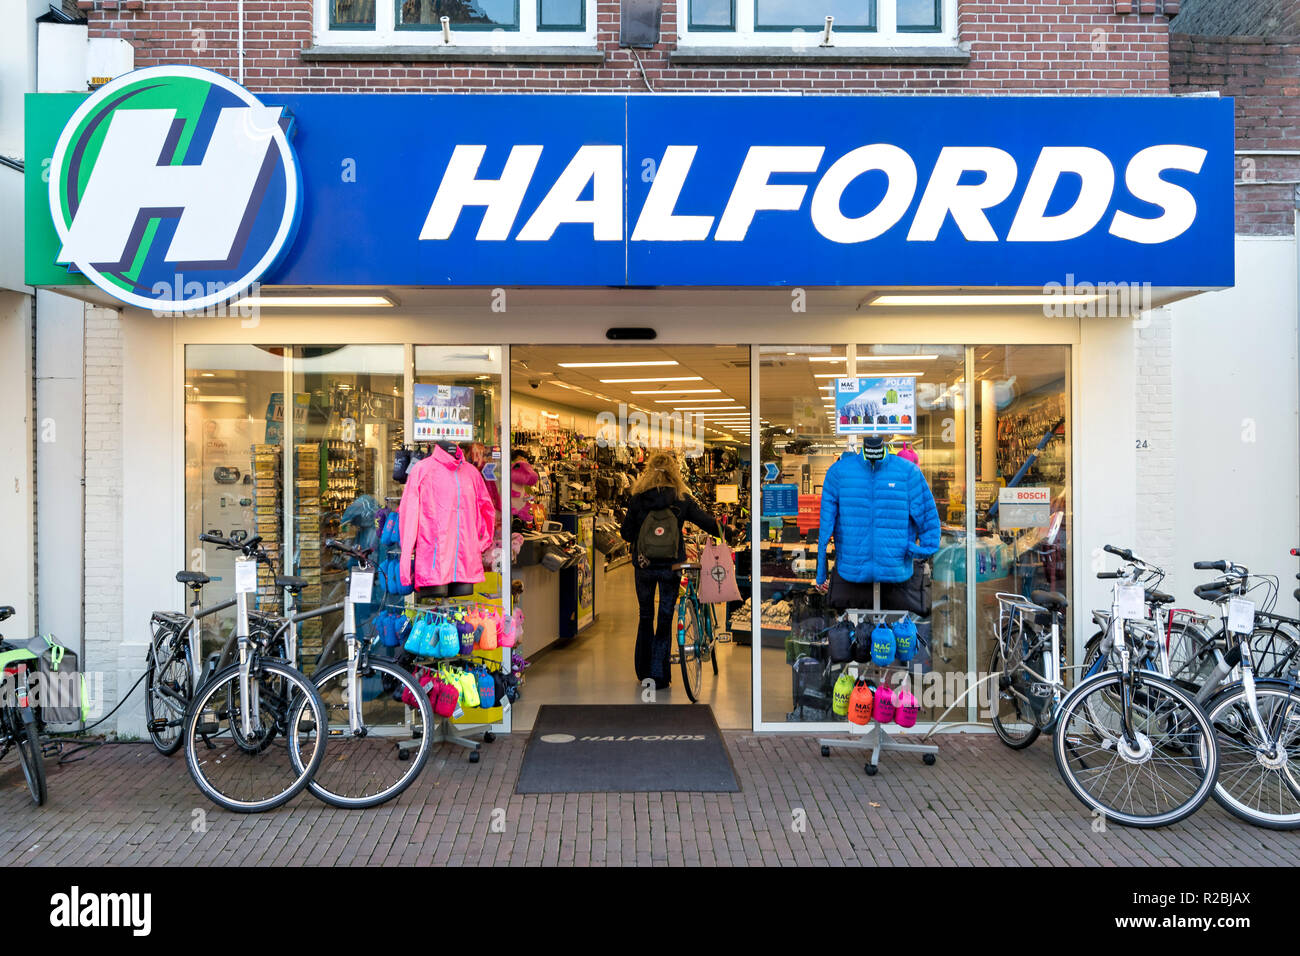 Magasin Halfords à Sneek, Pays-Bas. Halfords Nederland B.V. possède et exploite une chaîne de vélo et magasins de pièces automobiles en Belgique et aux Pays-Bas. Banque D'Images